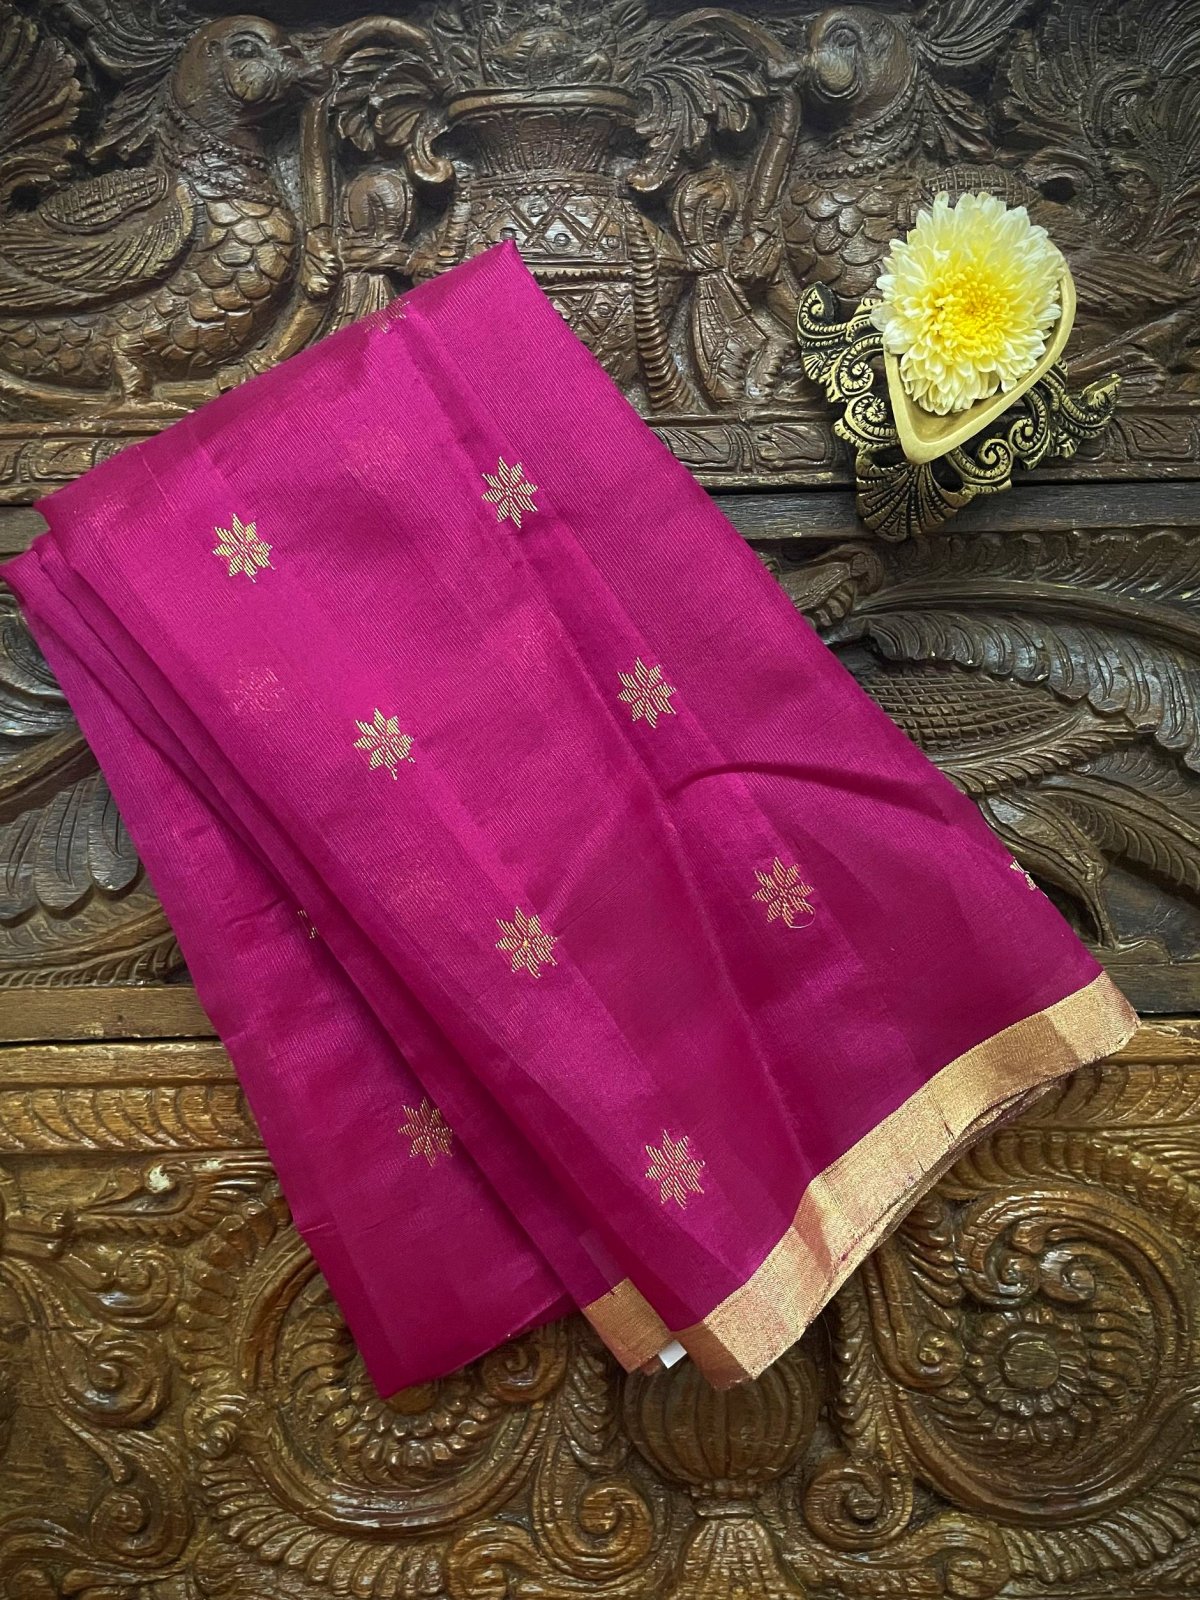 Dark Pink Chanderi Silk Blouse With Gold Zari Floral Motifs